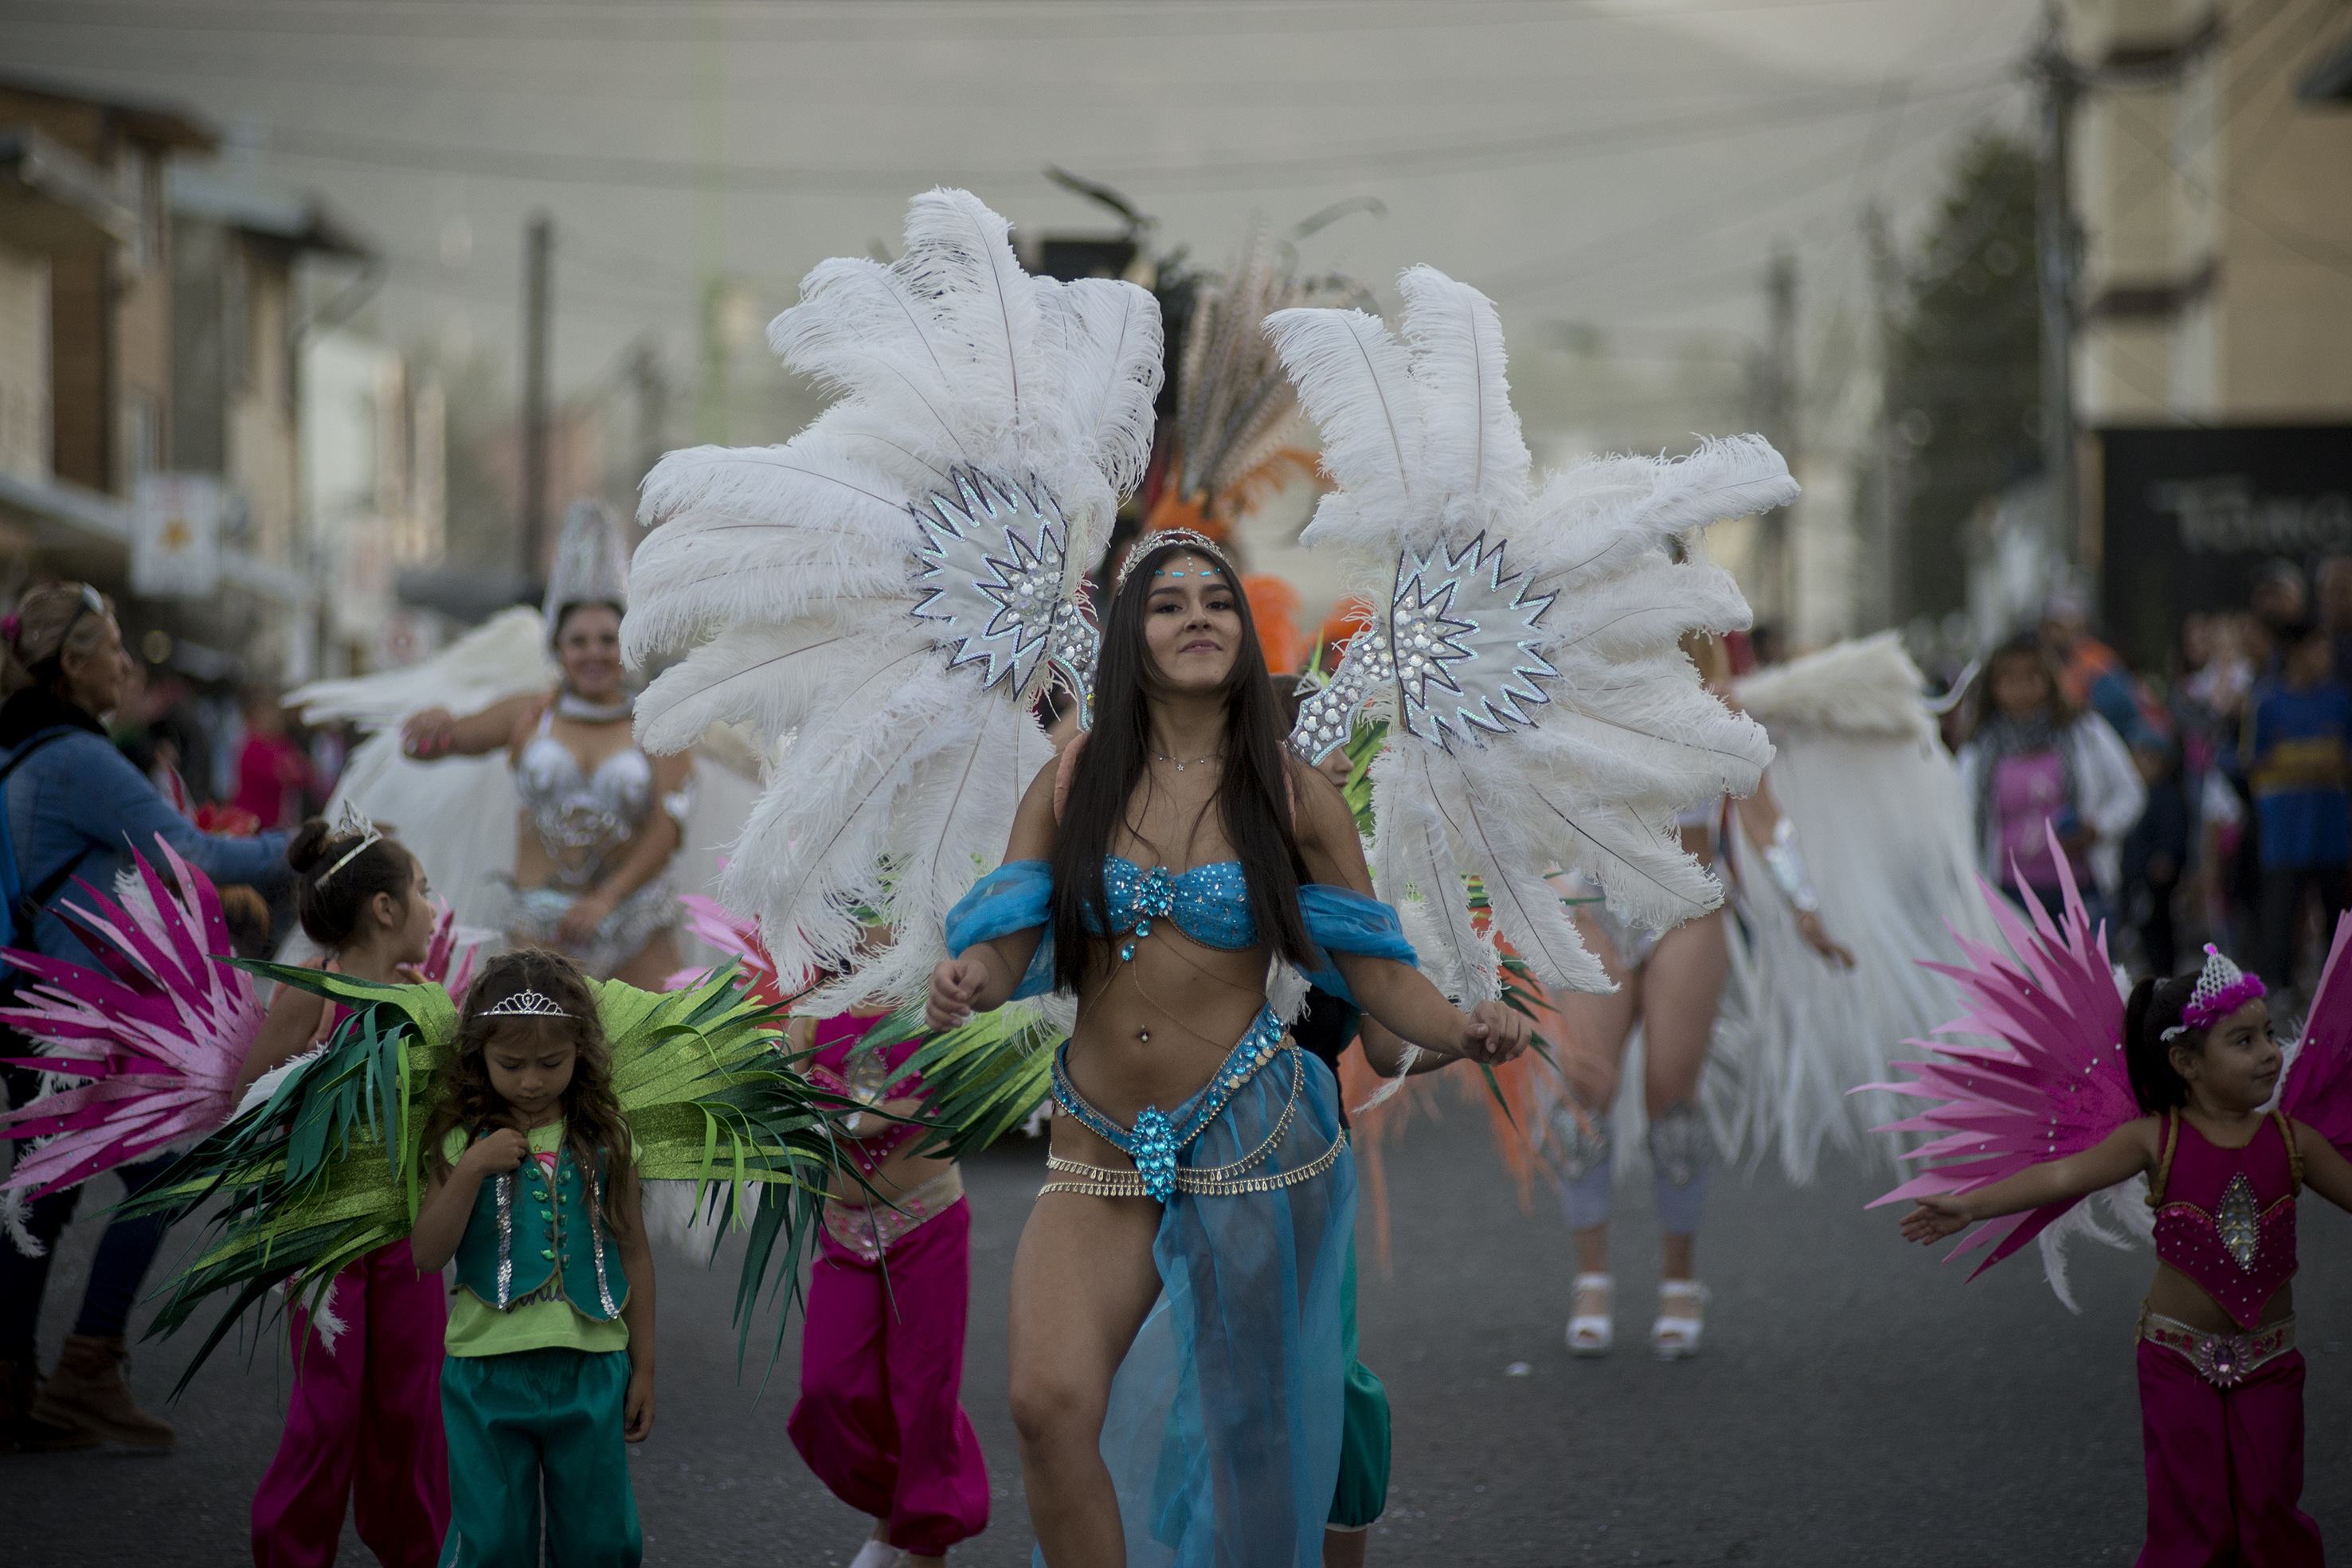 Hay agrupaciones del carnaval que ponen mucho esmero y trabajo en su indumentaria. Foto: Marcelo Martinez